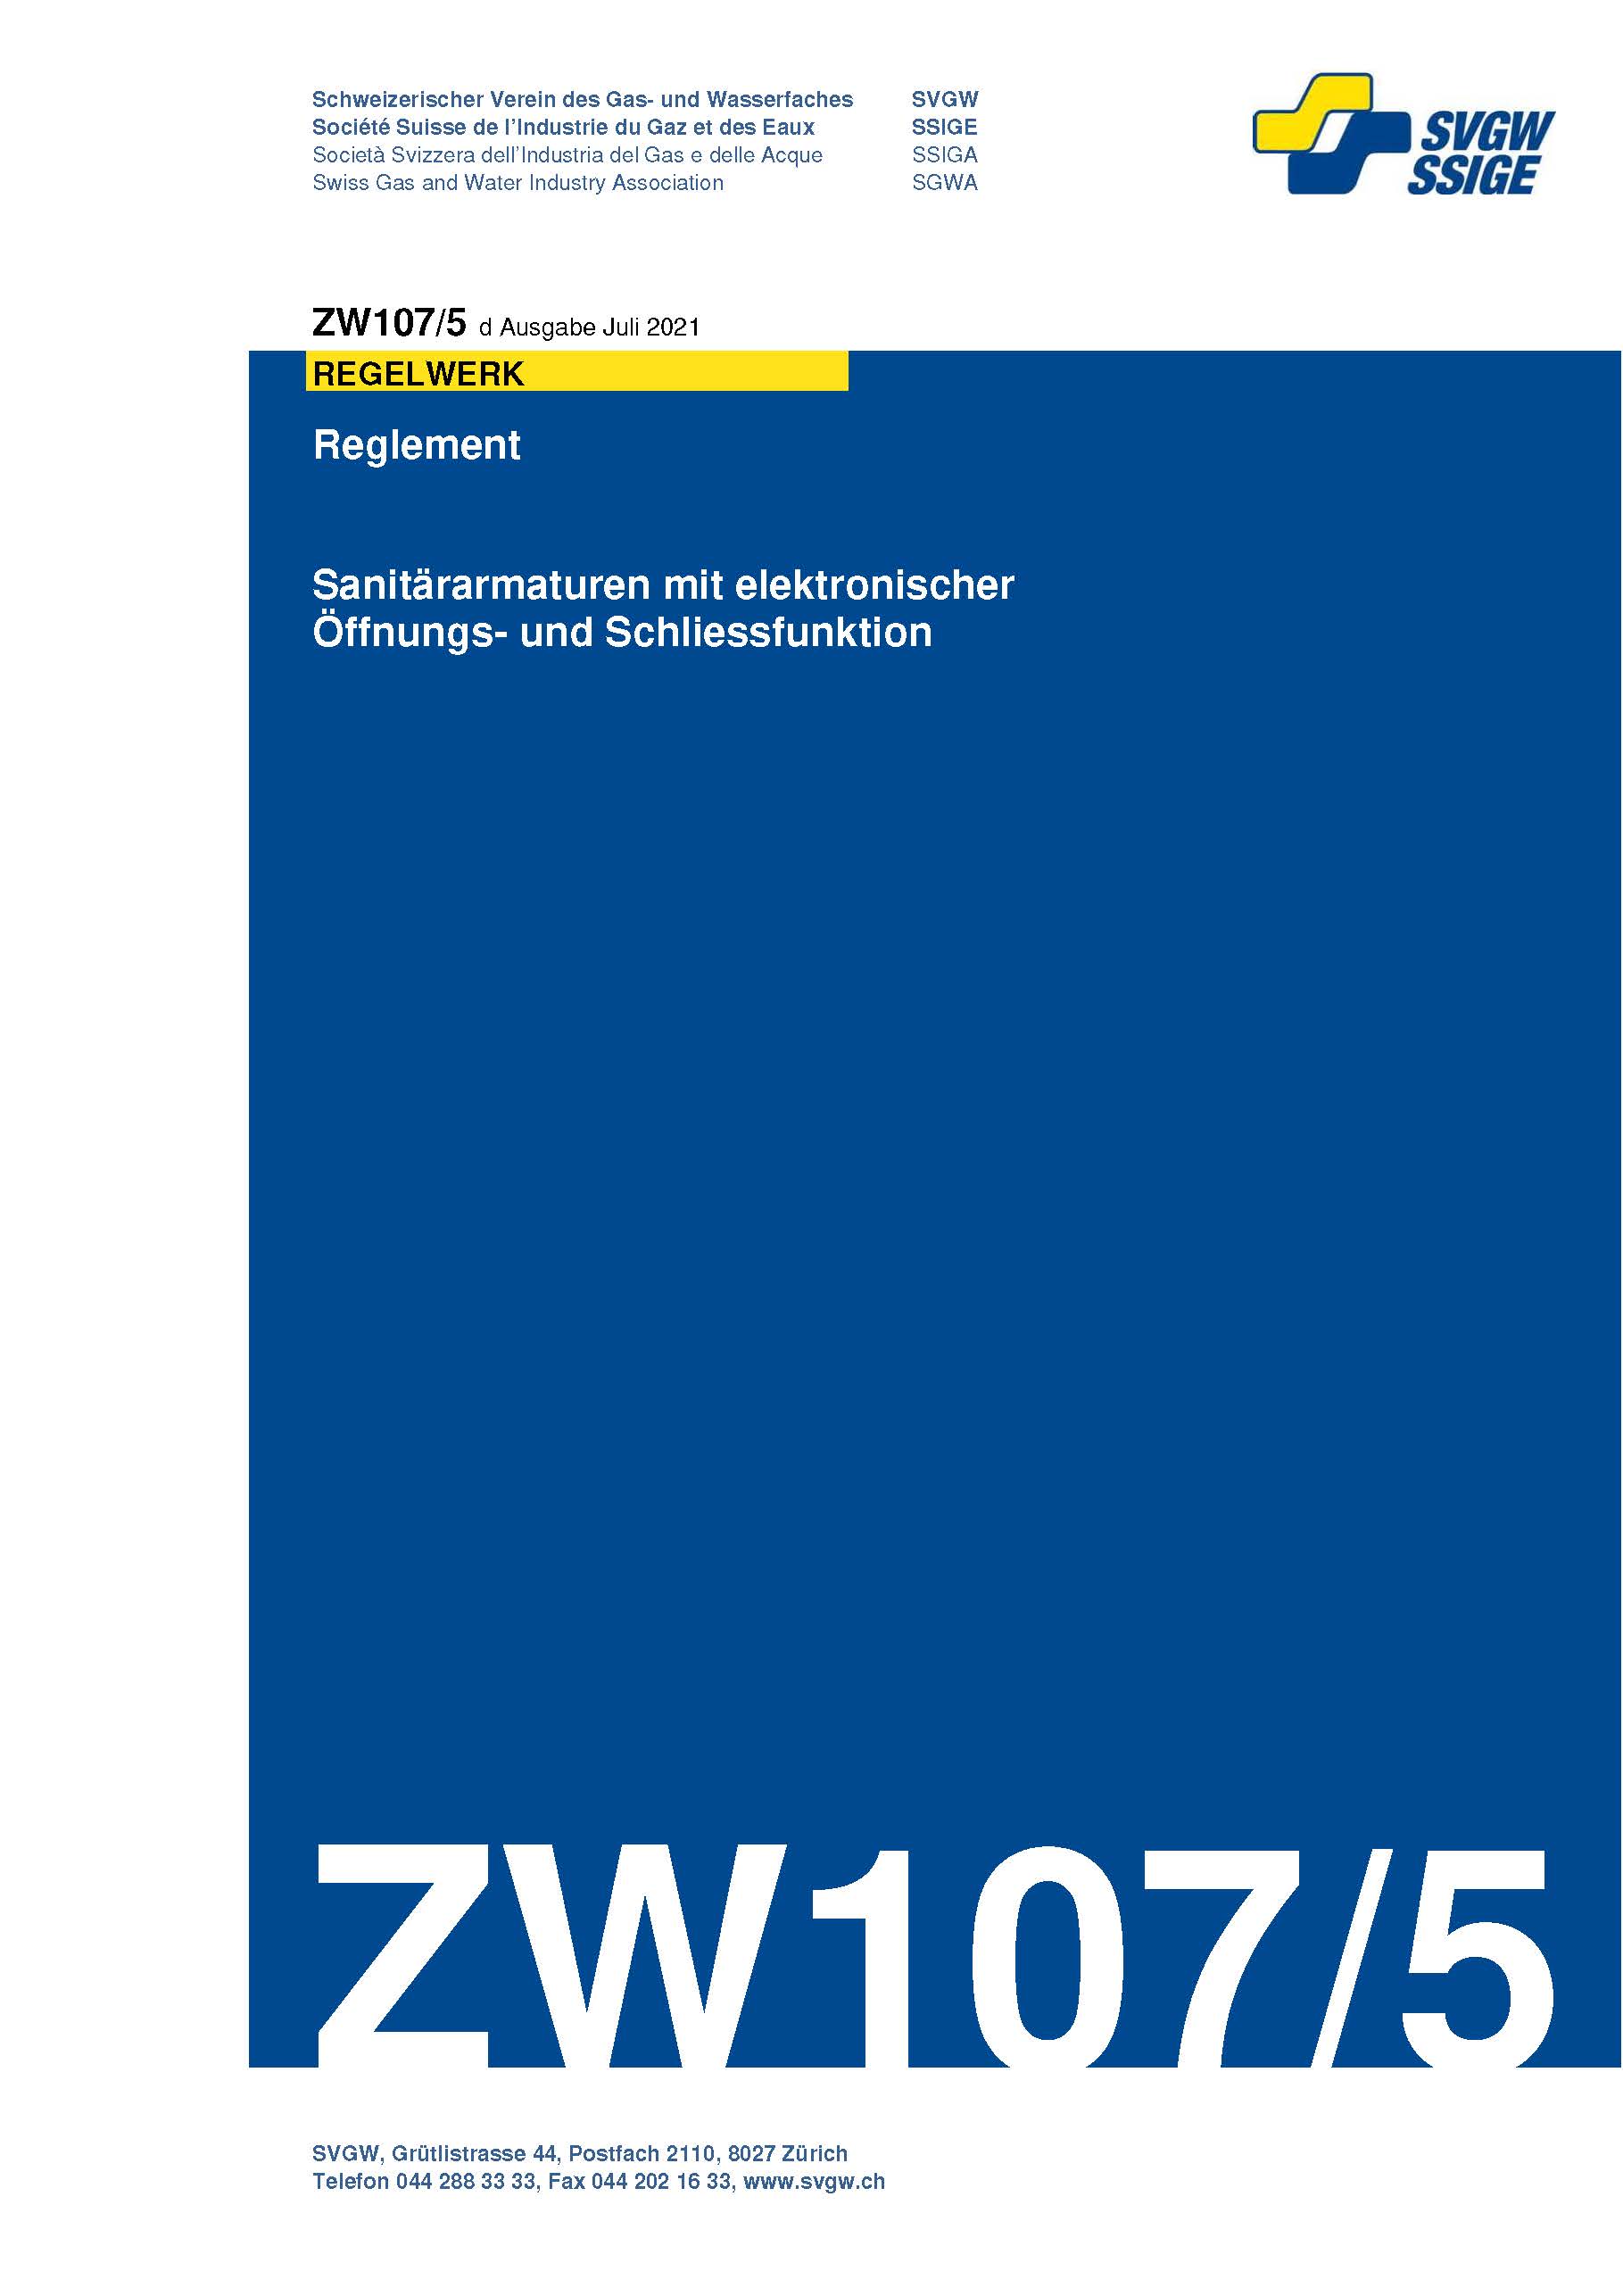 ZW107/5 d - Reglement; Sanitärarmaturen mit elektronischer Öffnungs- und Schliessfunktion